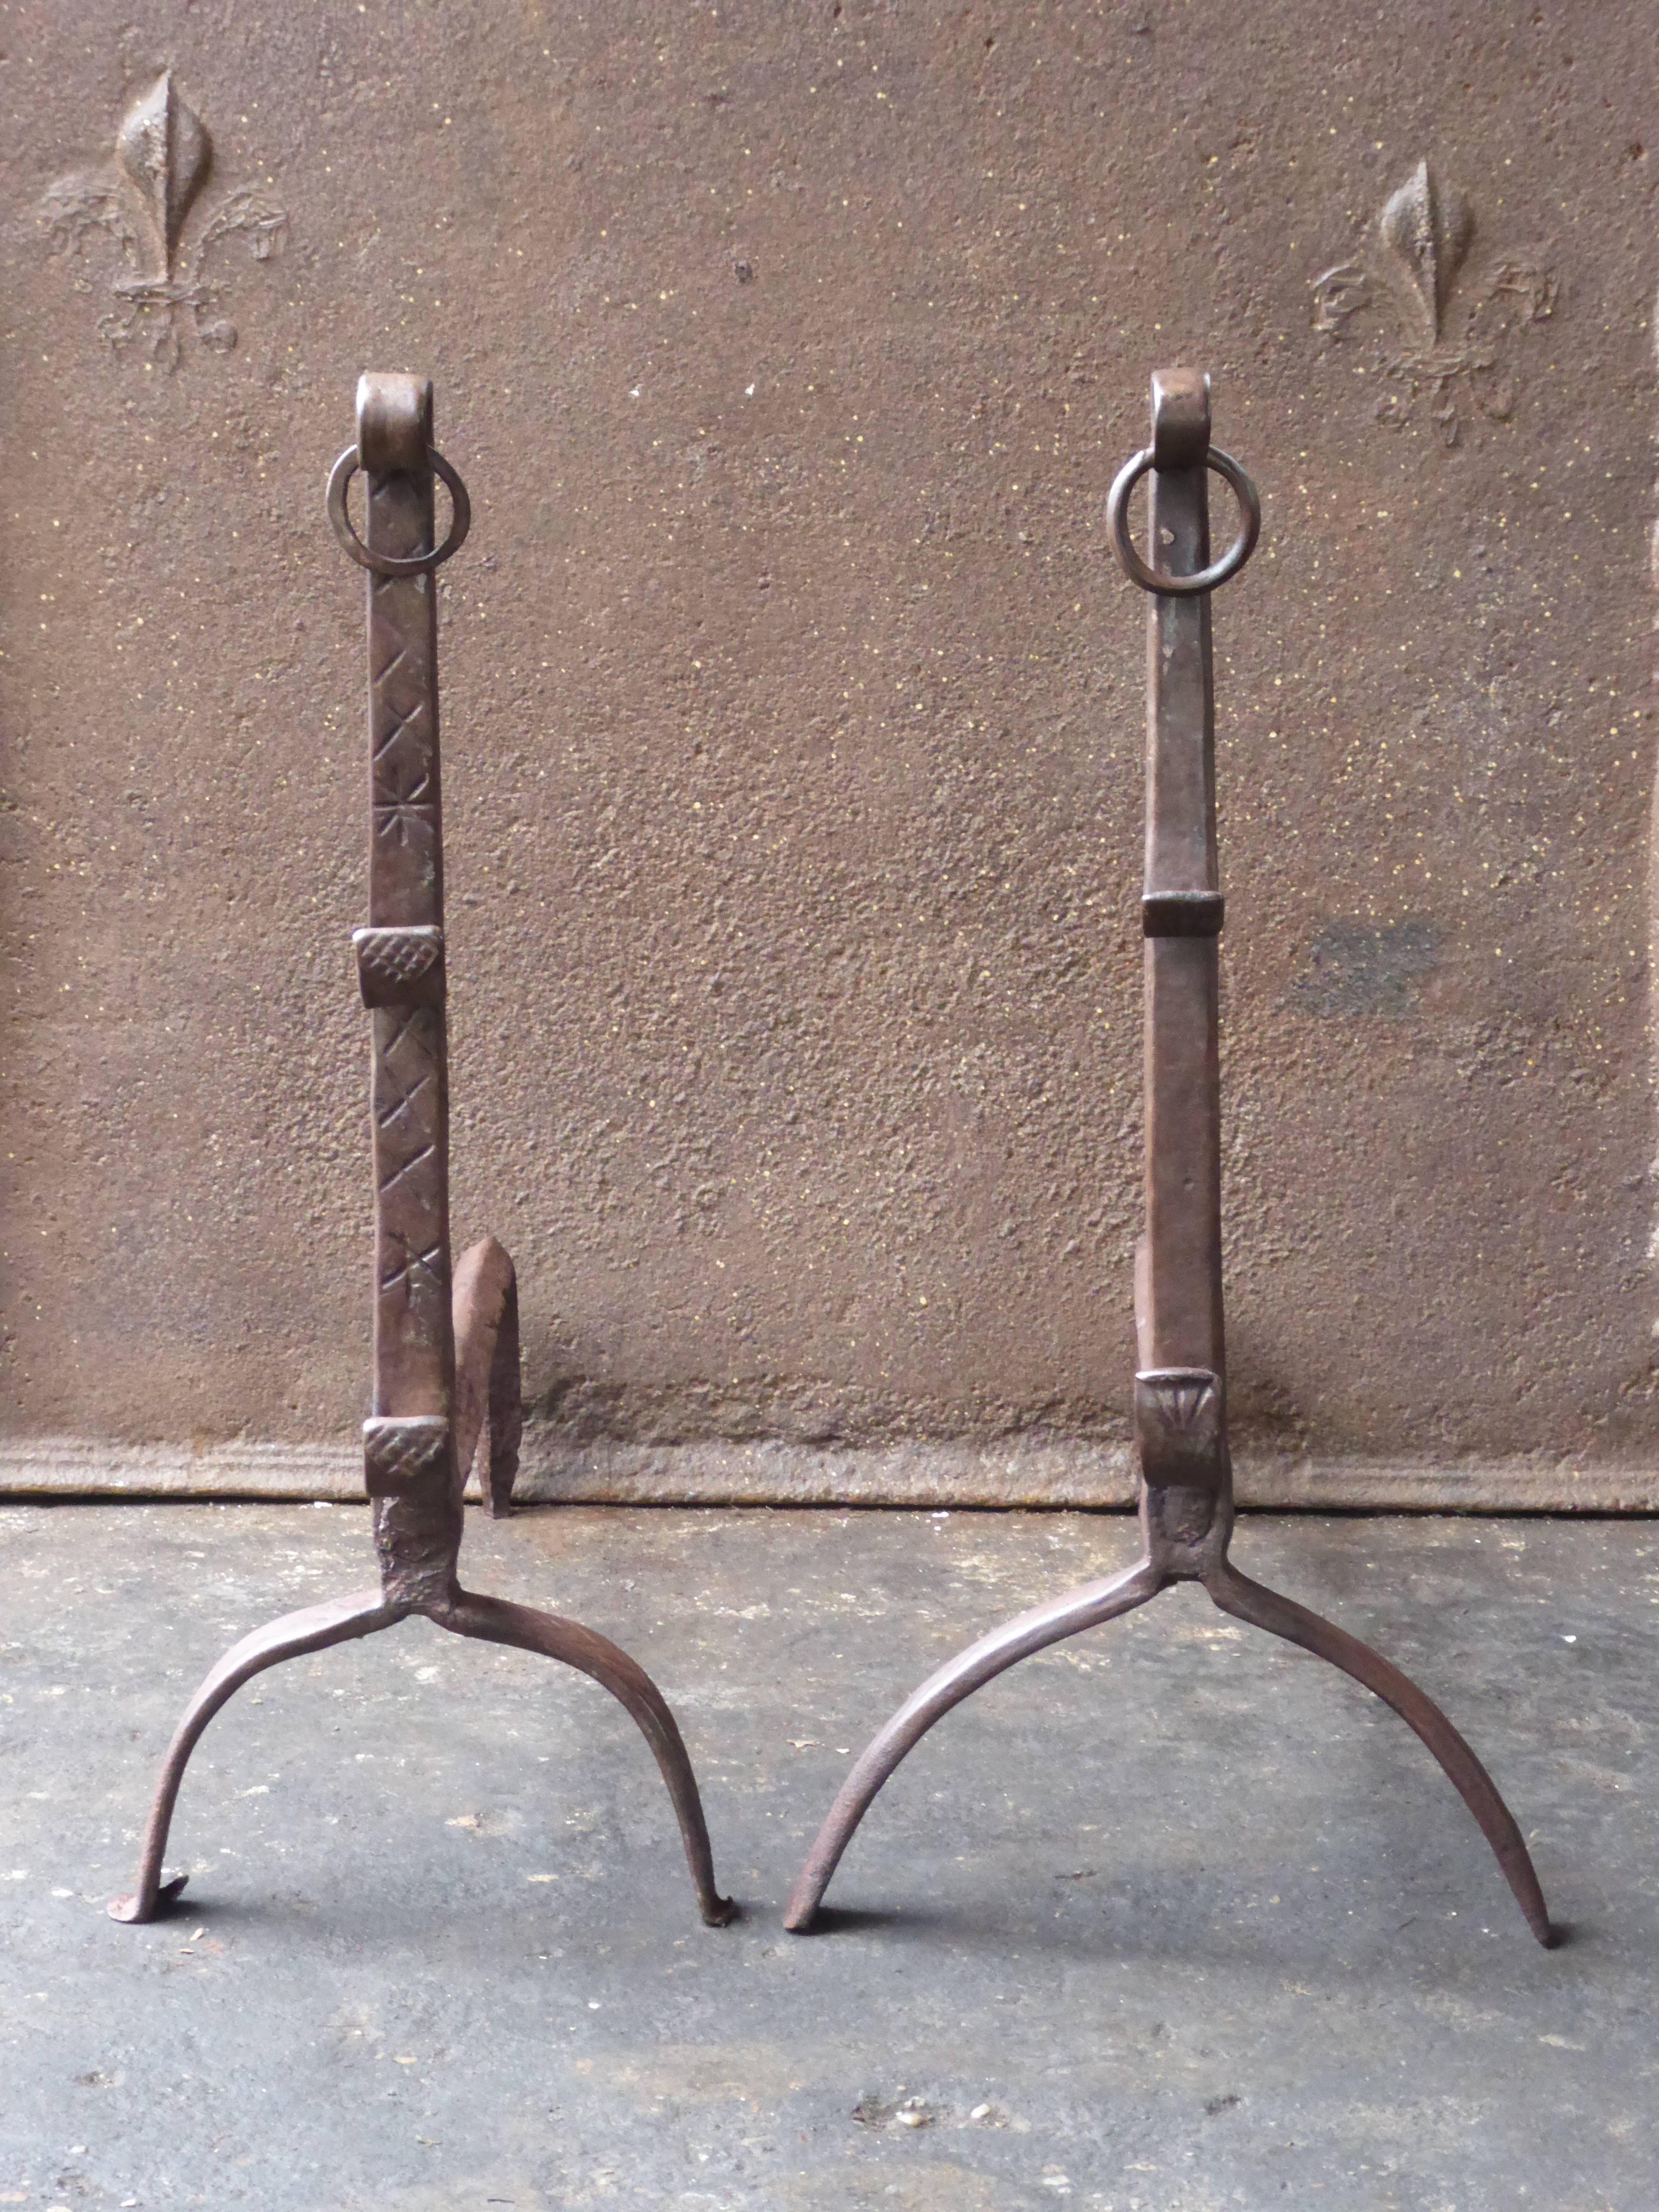 Chandeliers gothiques français du 17e siècle en fer forgé. Les chenets sont en bon état et peuvent être utilisés dans la cheminée.

